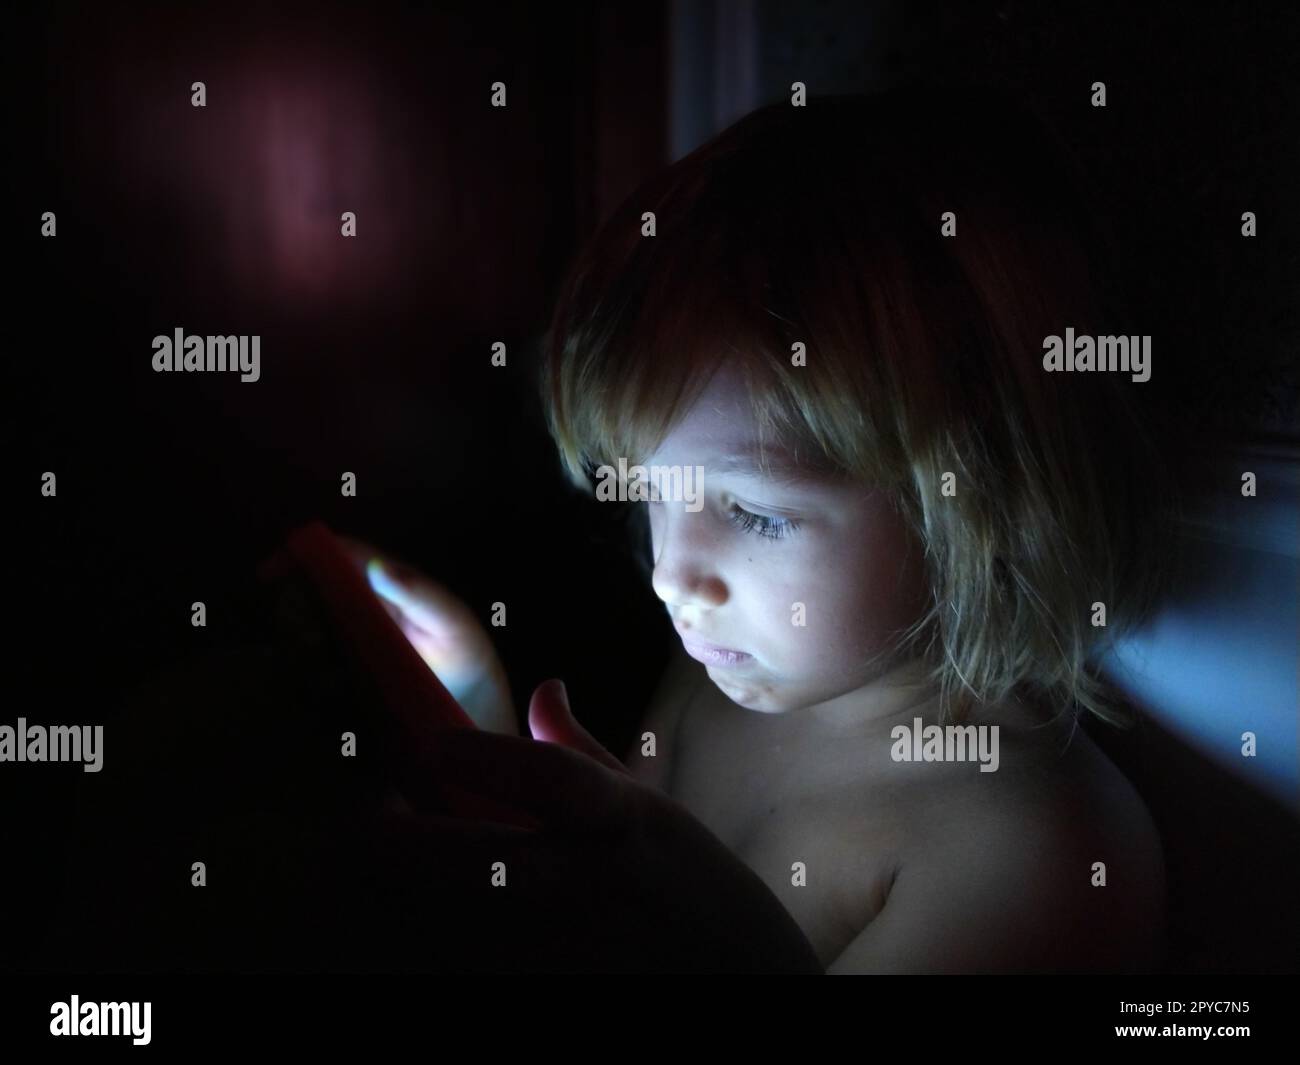 Una bambina carina gioca con un tablet. Un bambino di 7 anni con una faccia seria e capelli biondi guarda in un gadget. Copia spazio. Ragazza nella stanza. Parete scura e chiara. A casa di notte Foto Stock